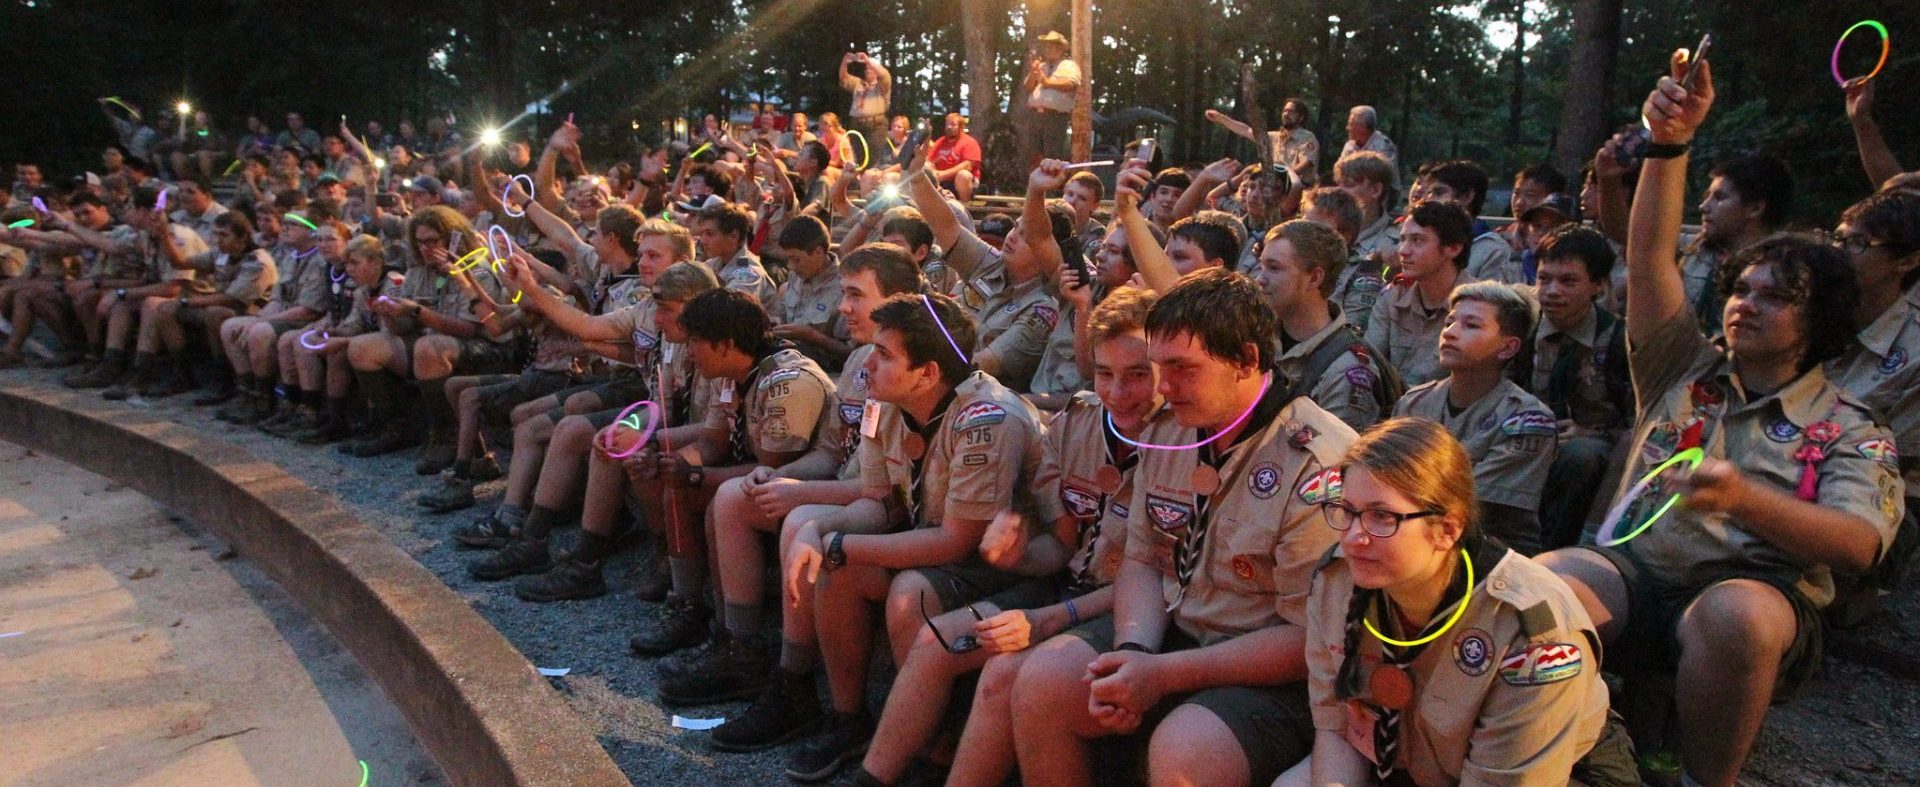 Scouts BSA summer camp